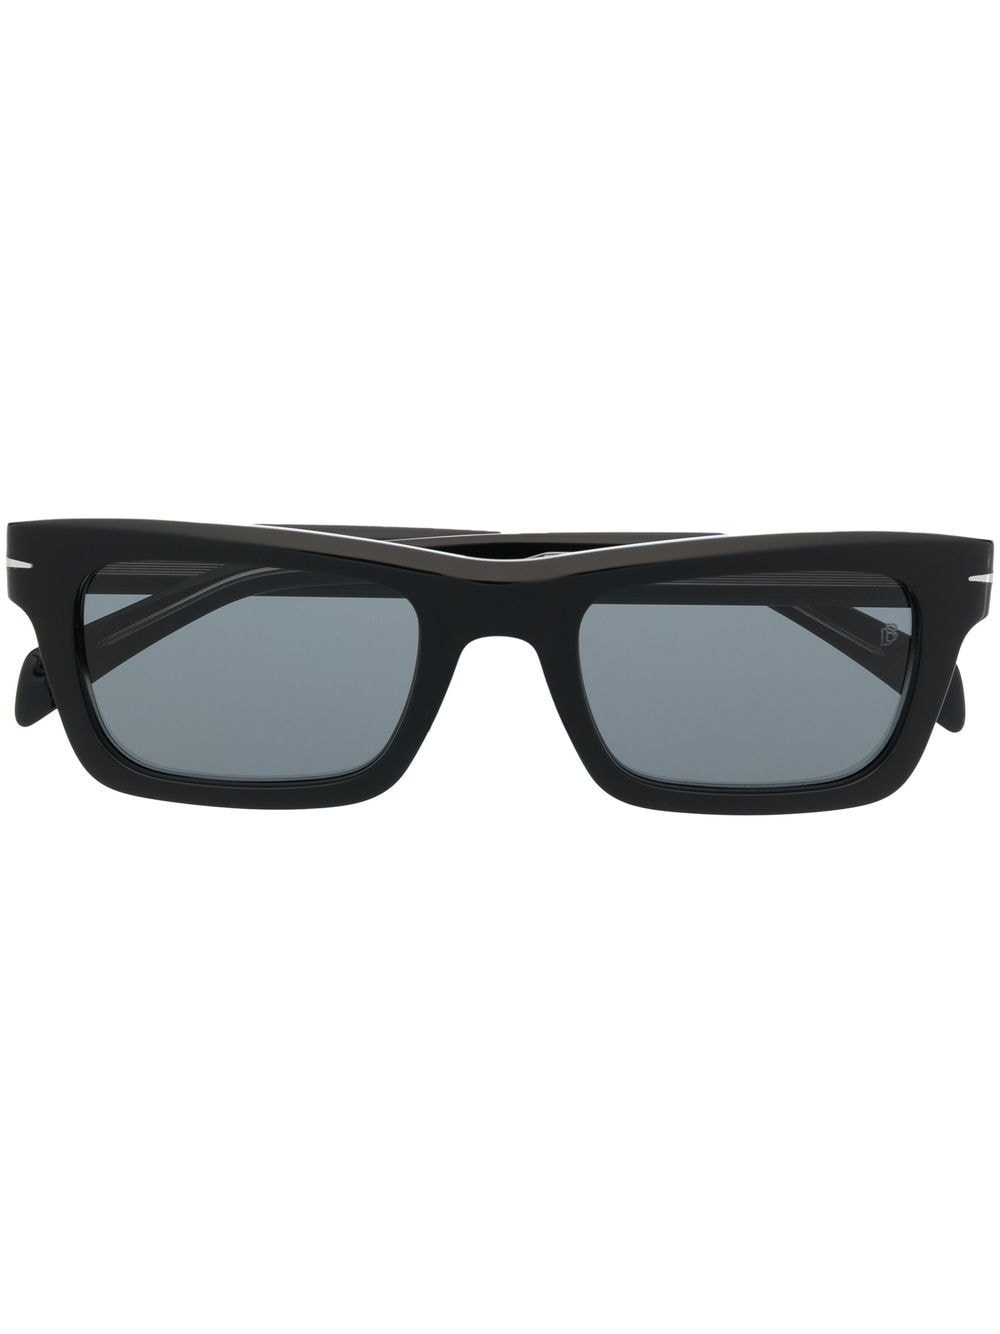 Eyewear by David Beckham tinted rectangle-frame sunglasses - Black von Eyewear by David Beckham